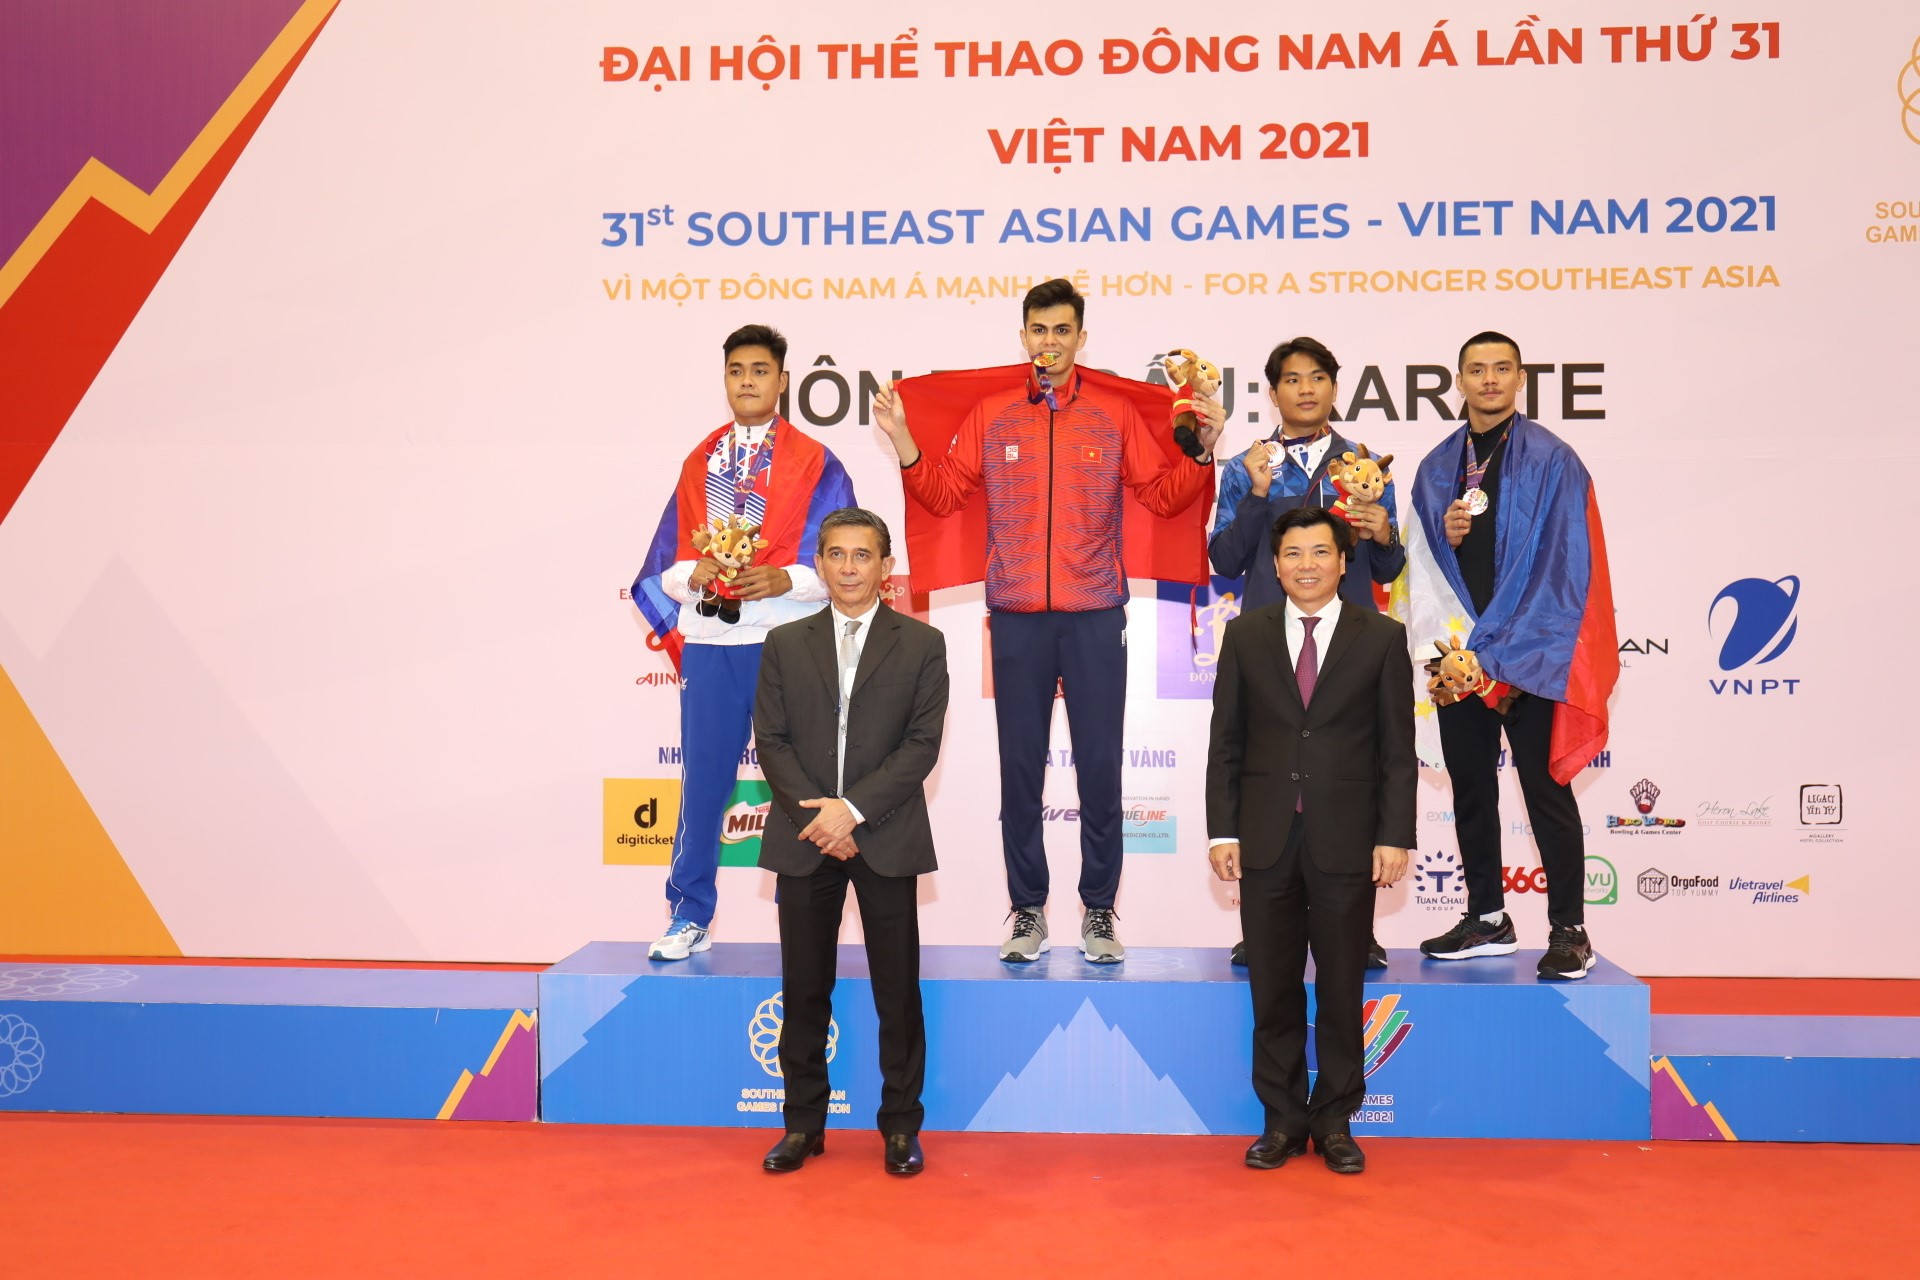 Tỉnh Ninh Bình tổ chức thành công môn Karate trong khuôn khổ Seagame 31 tại Ninh Bình.